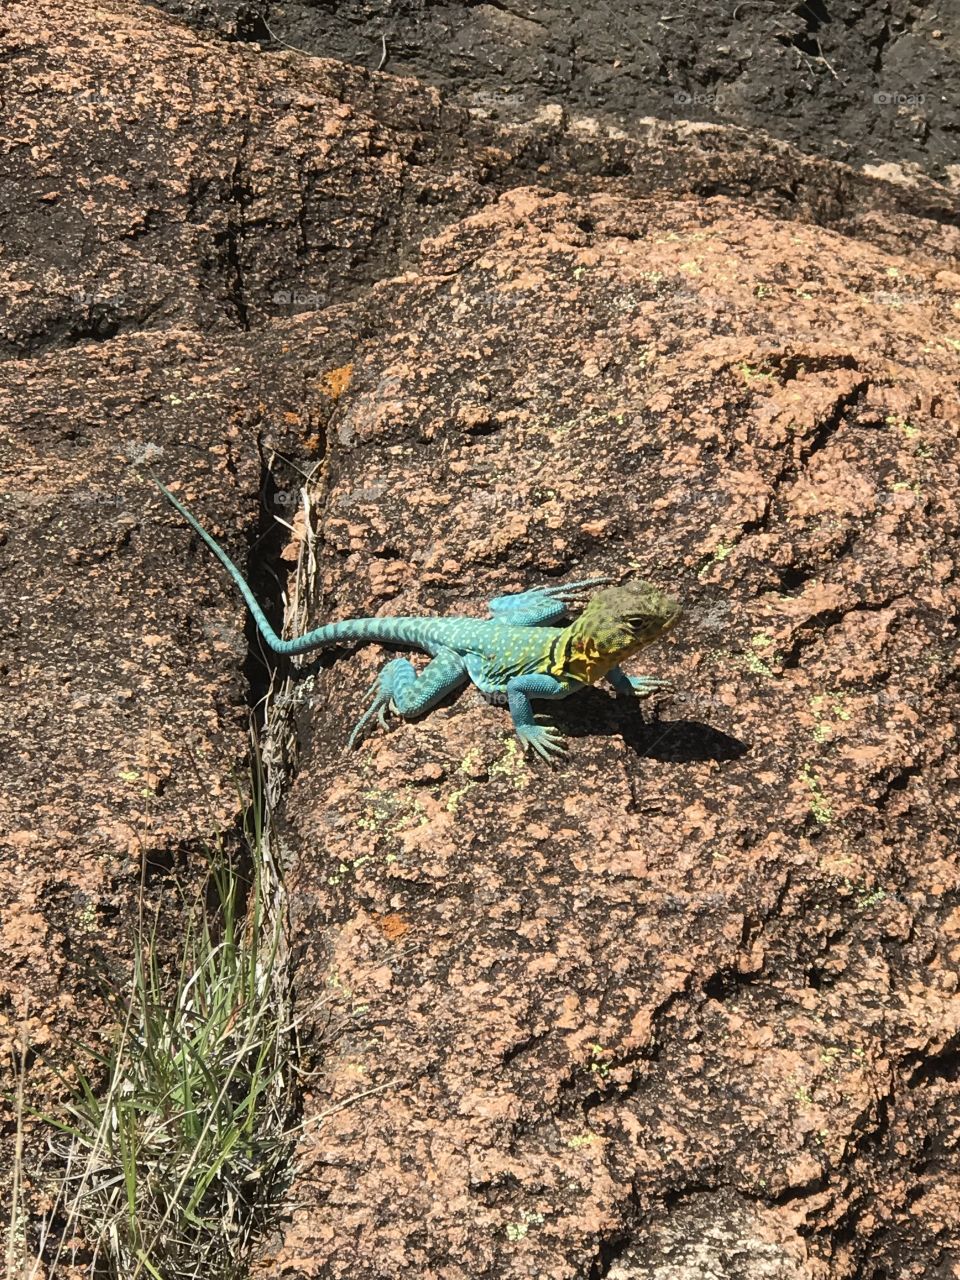 A lizard we saw on the hike